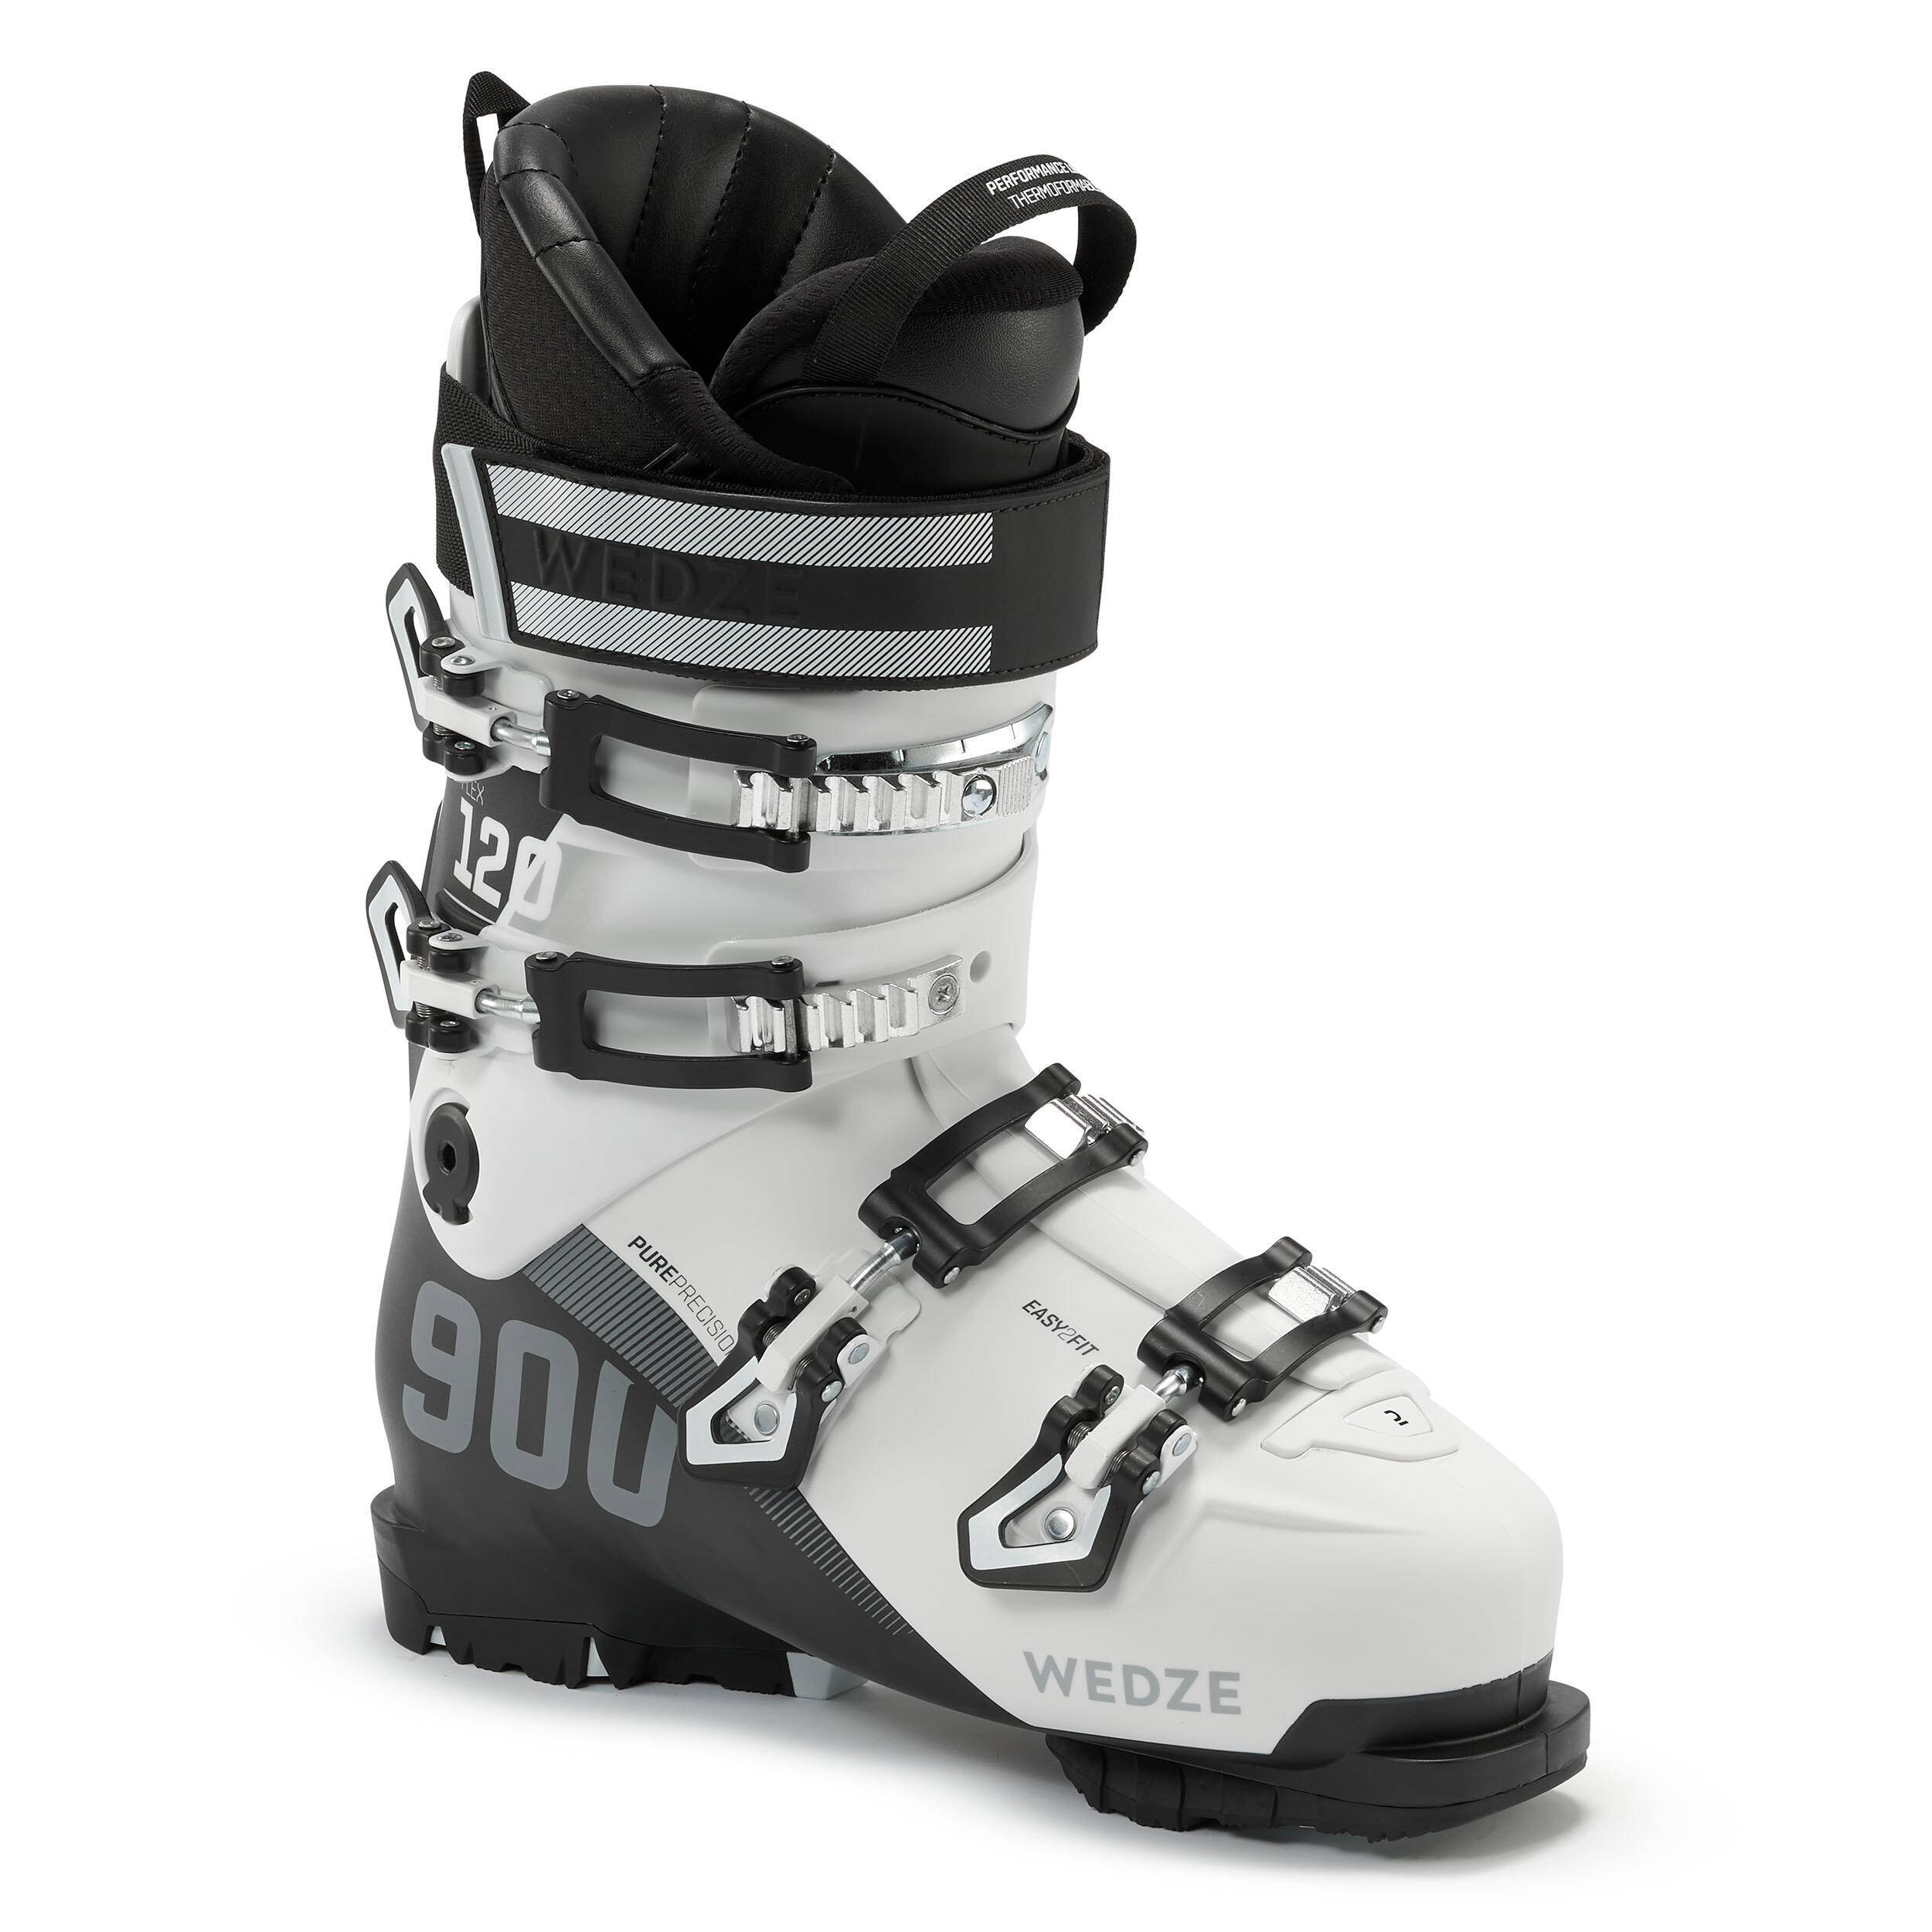 Wedze chaussures de ski 900